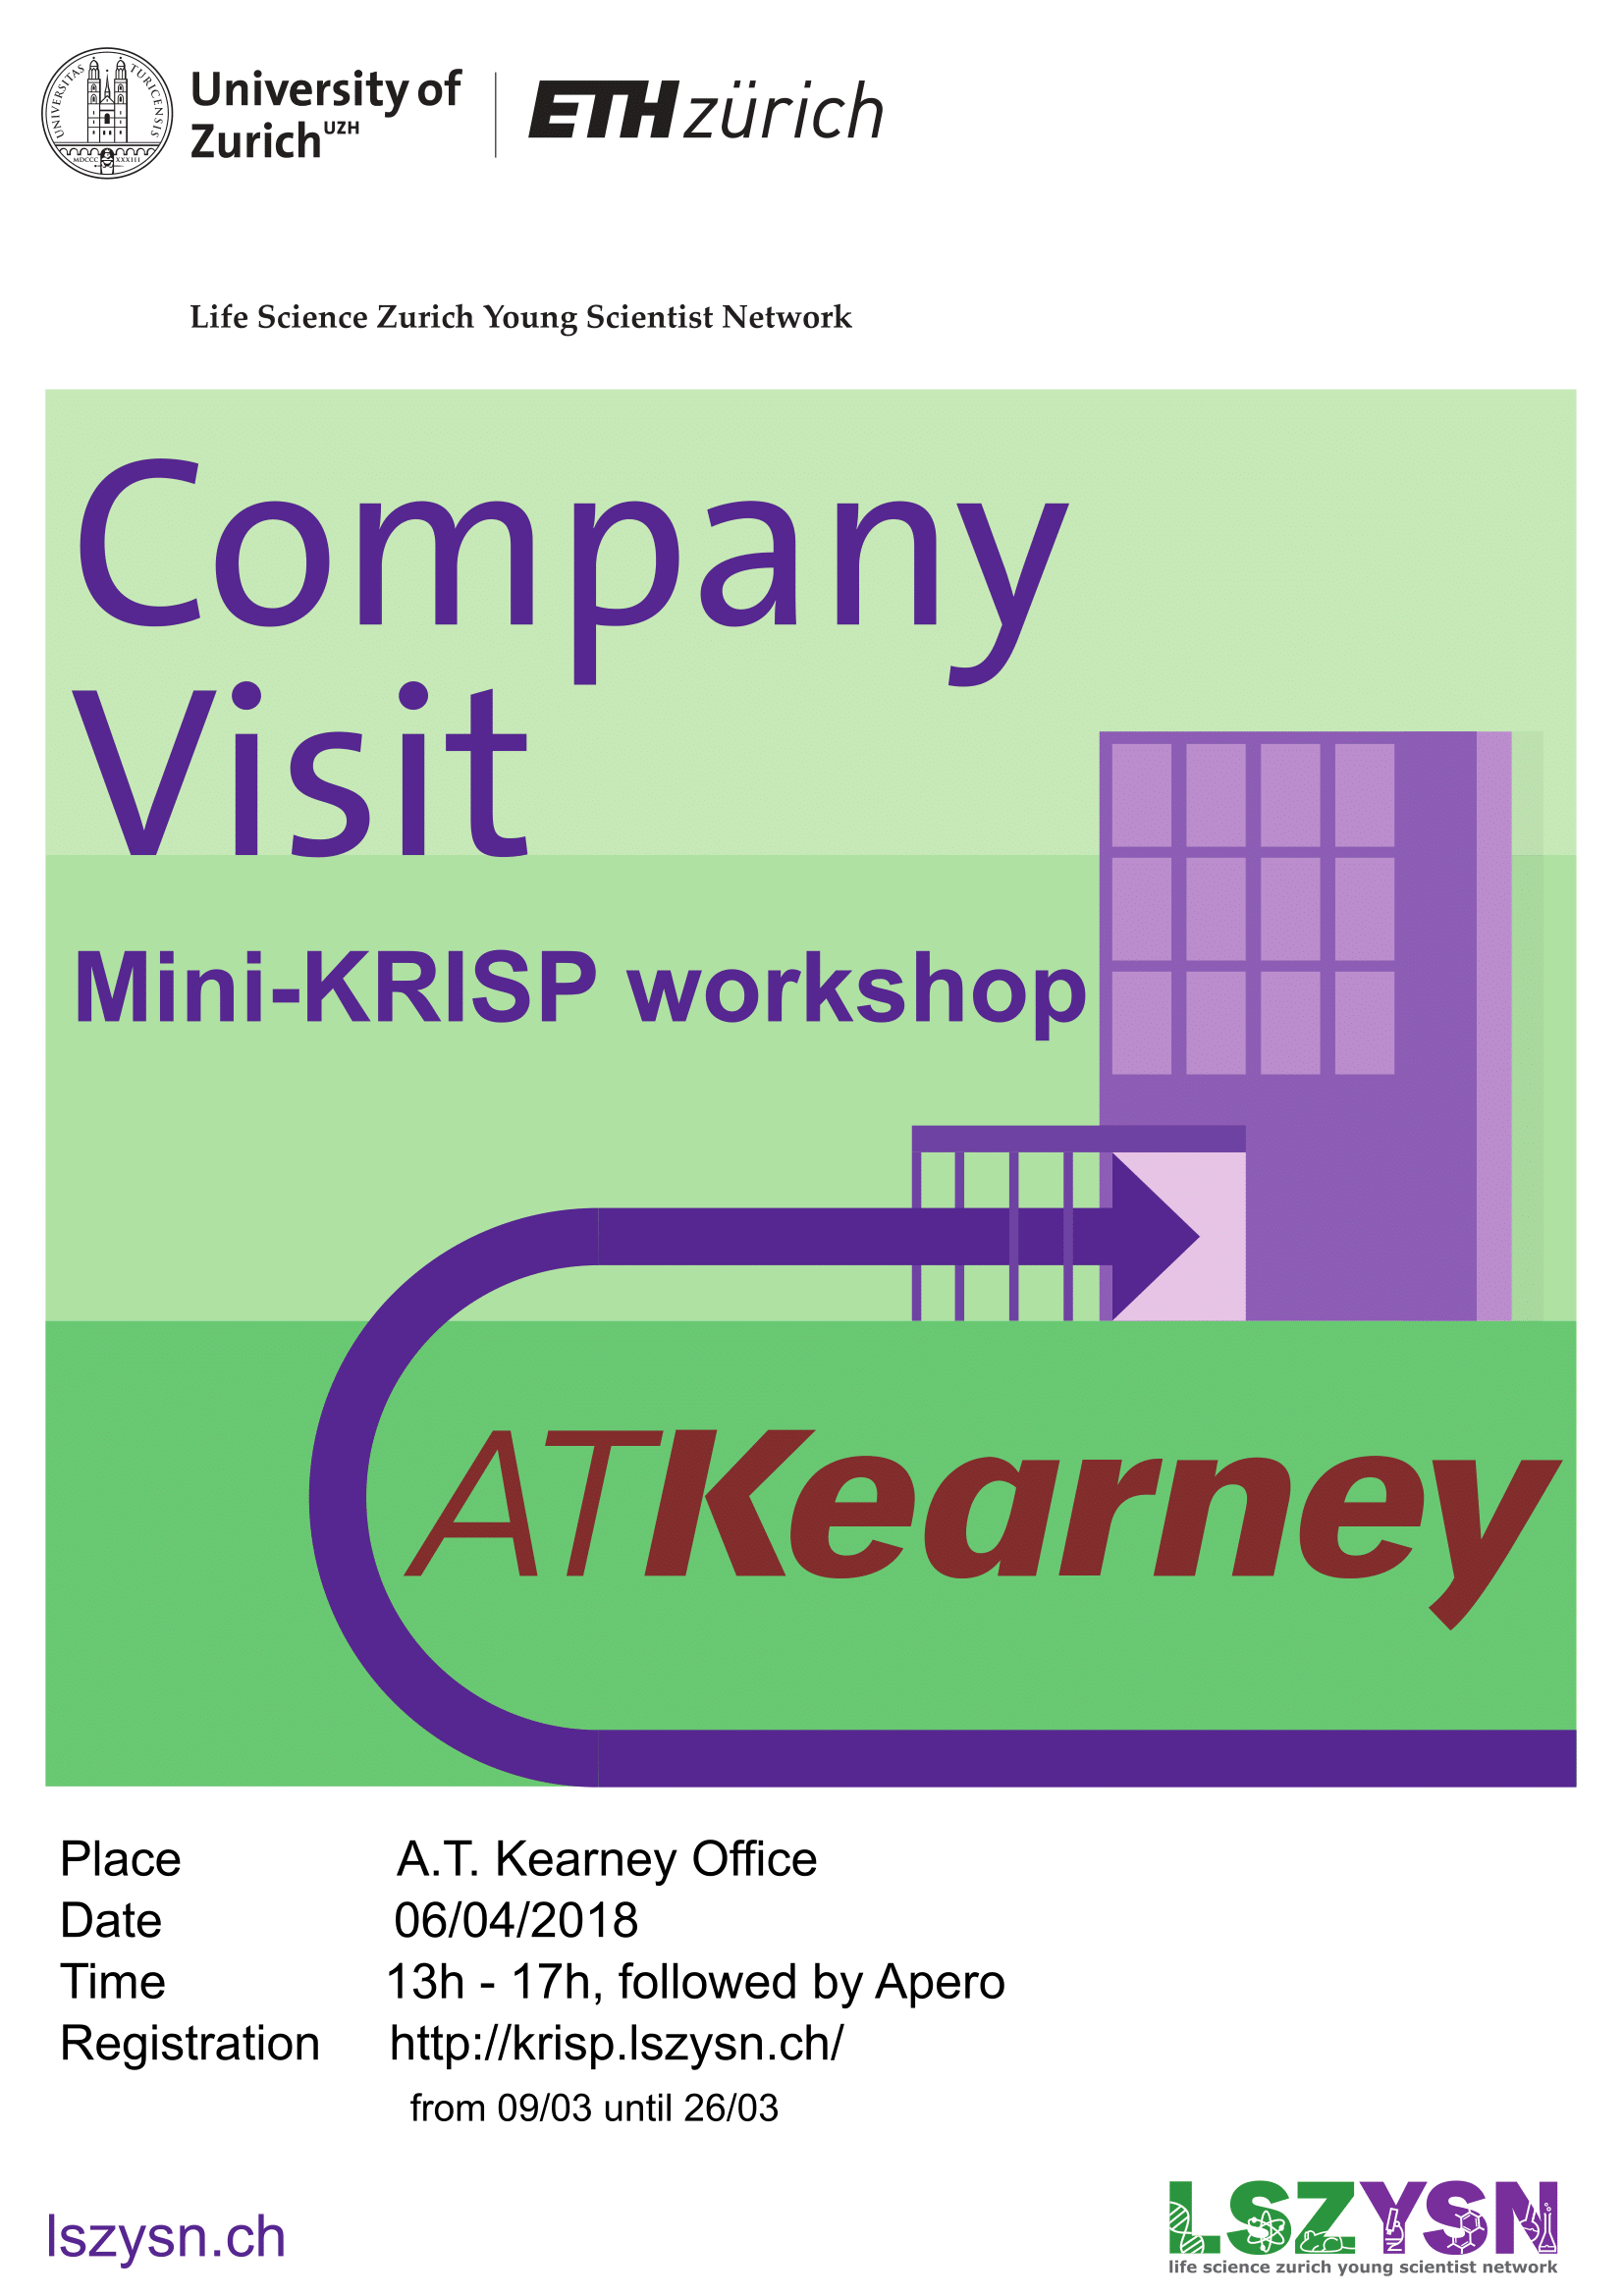 Poster for Mini-KRISP workshop at A.T. Kearney